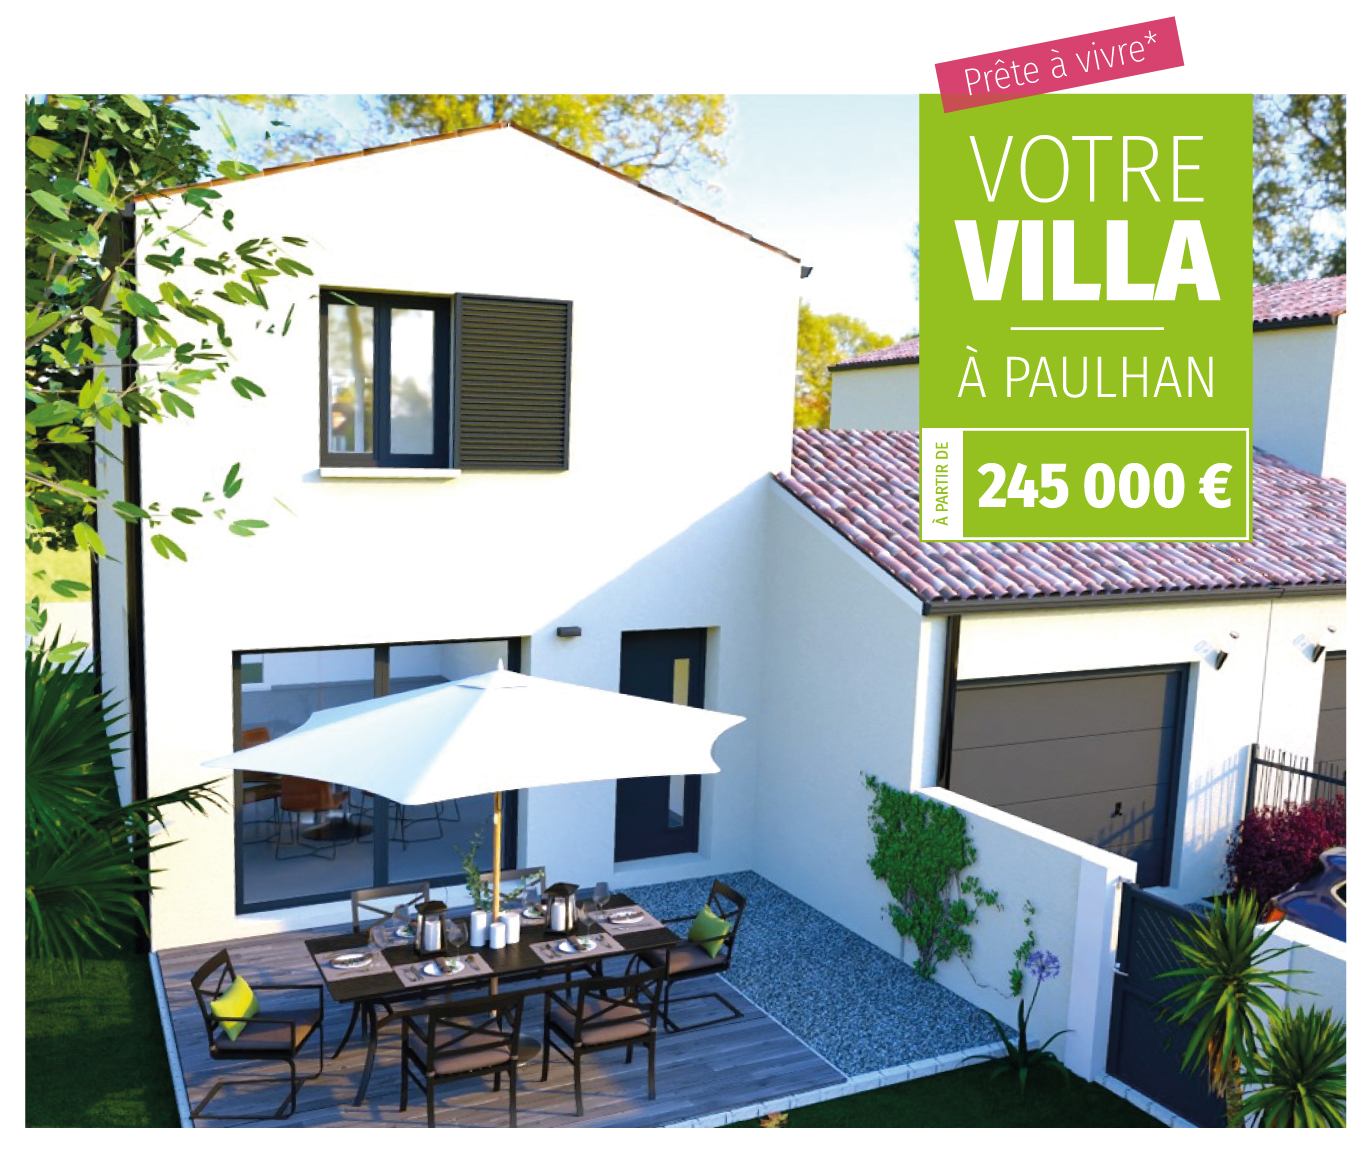 Votre Villa à Paulhan à partir de 245 000 €*